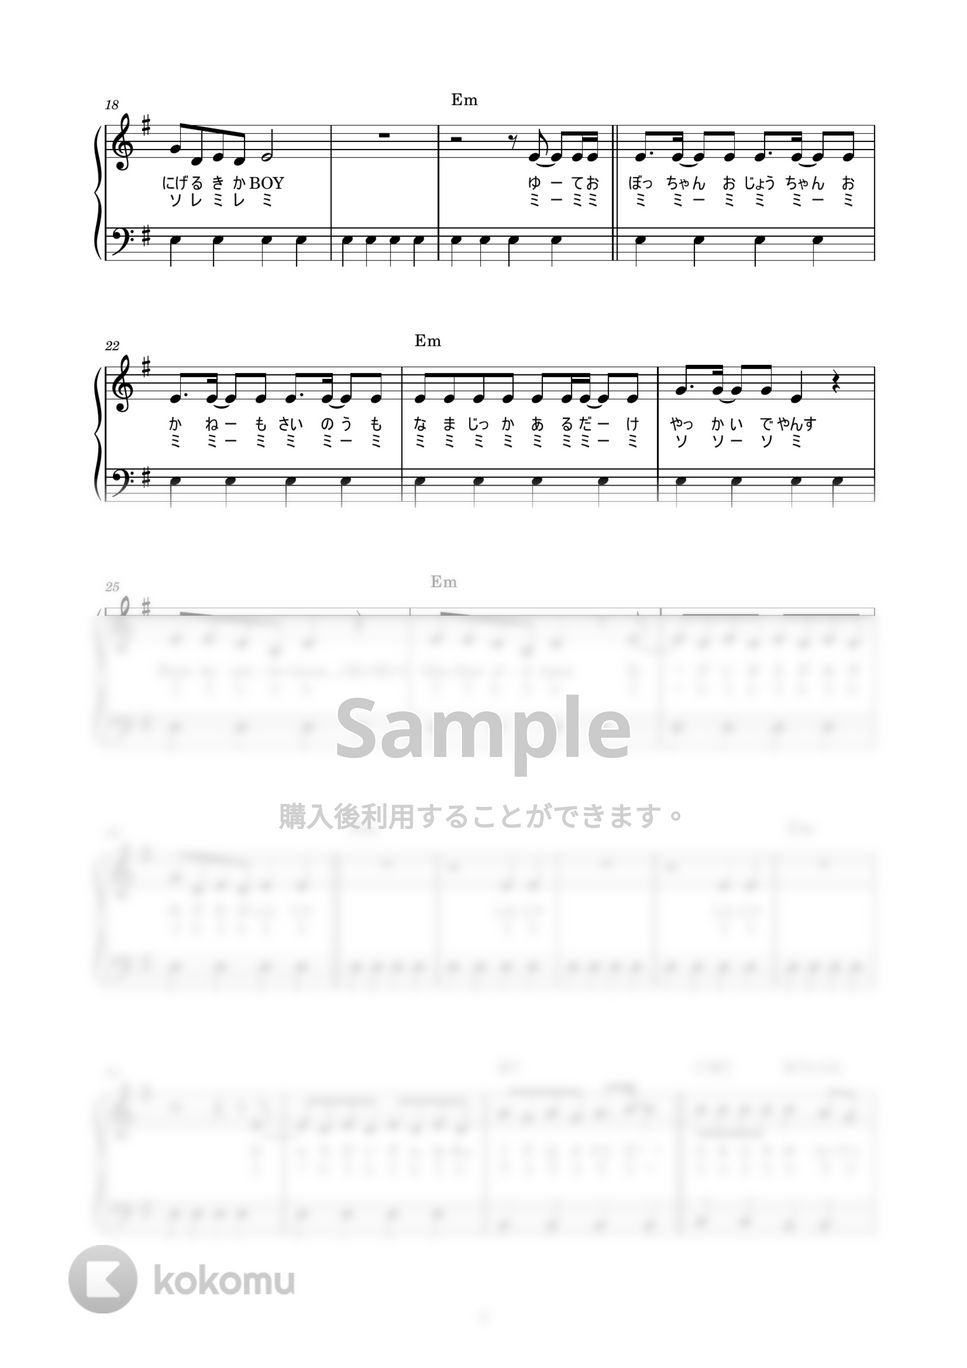 みきとP feat.鏡音リン - ロキ (かんたん / 歌詞付き / ドレミ付き / 初心者) by piano.tokyo